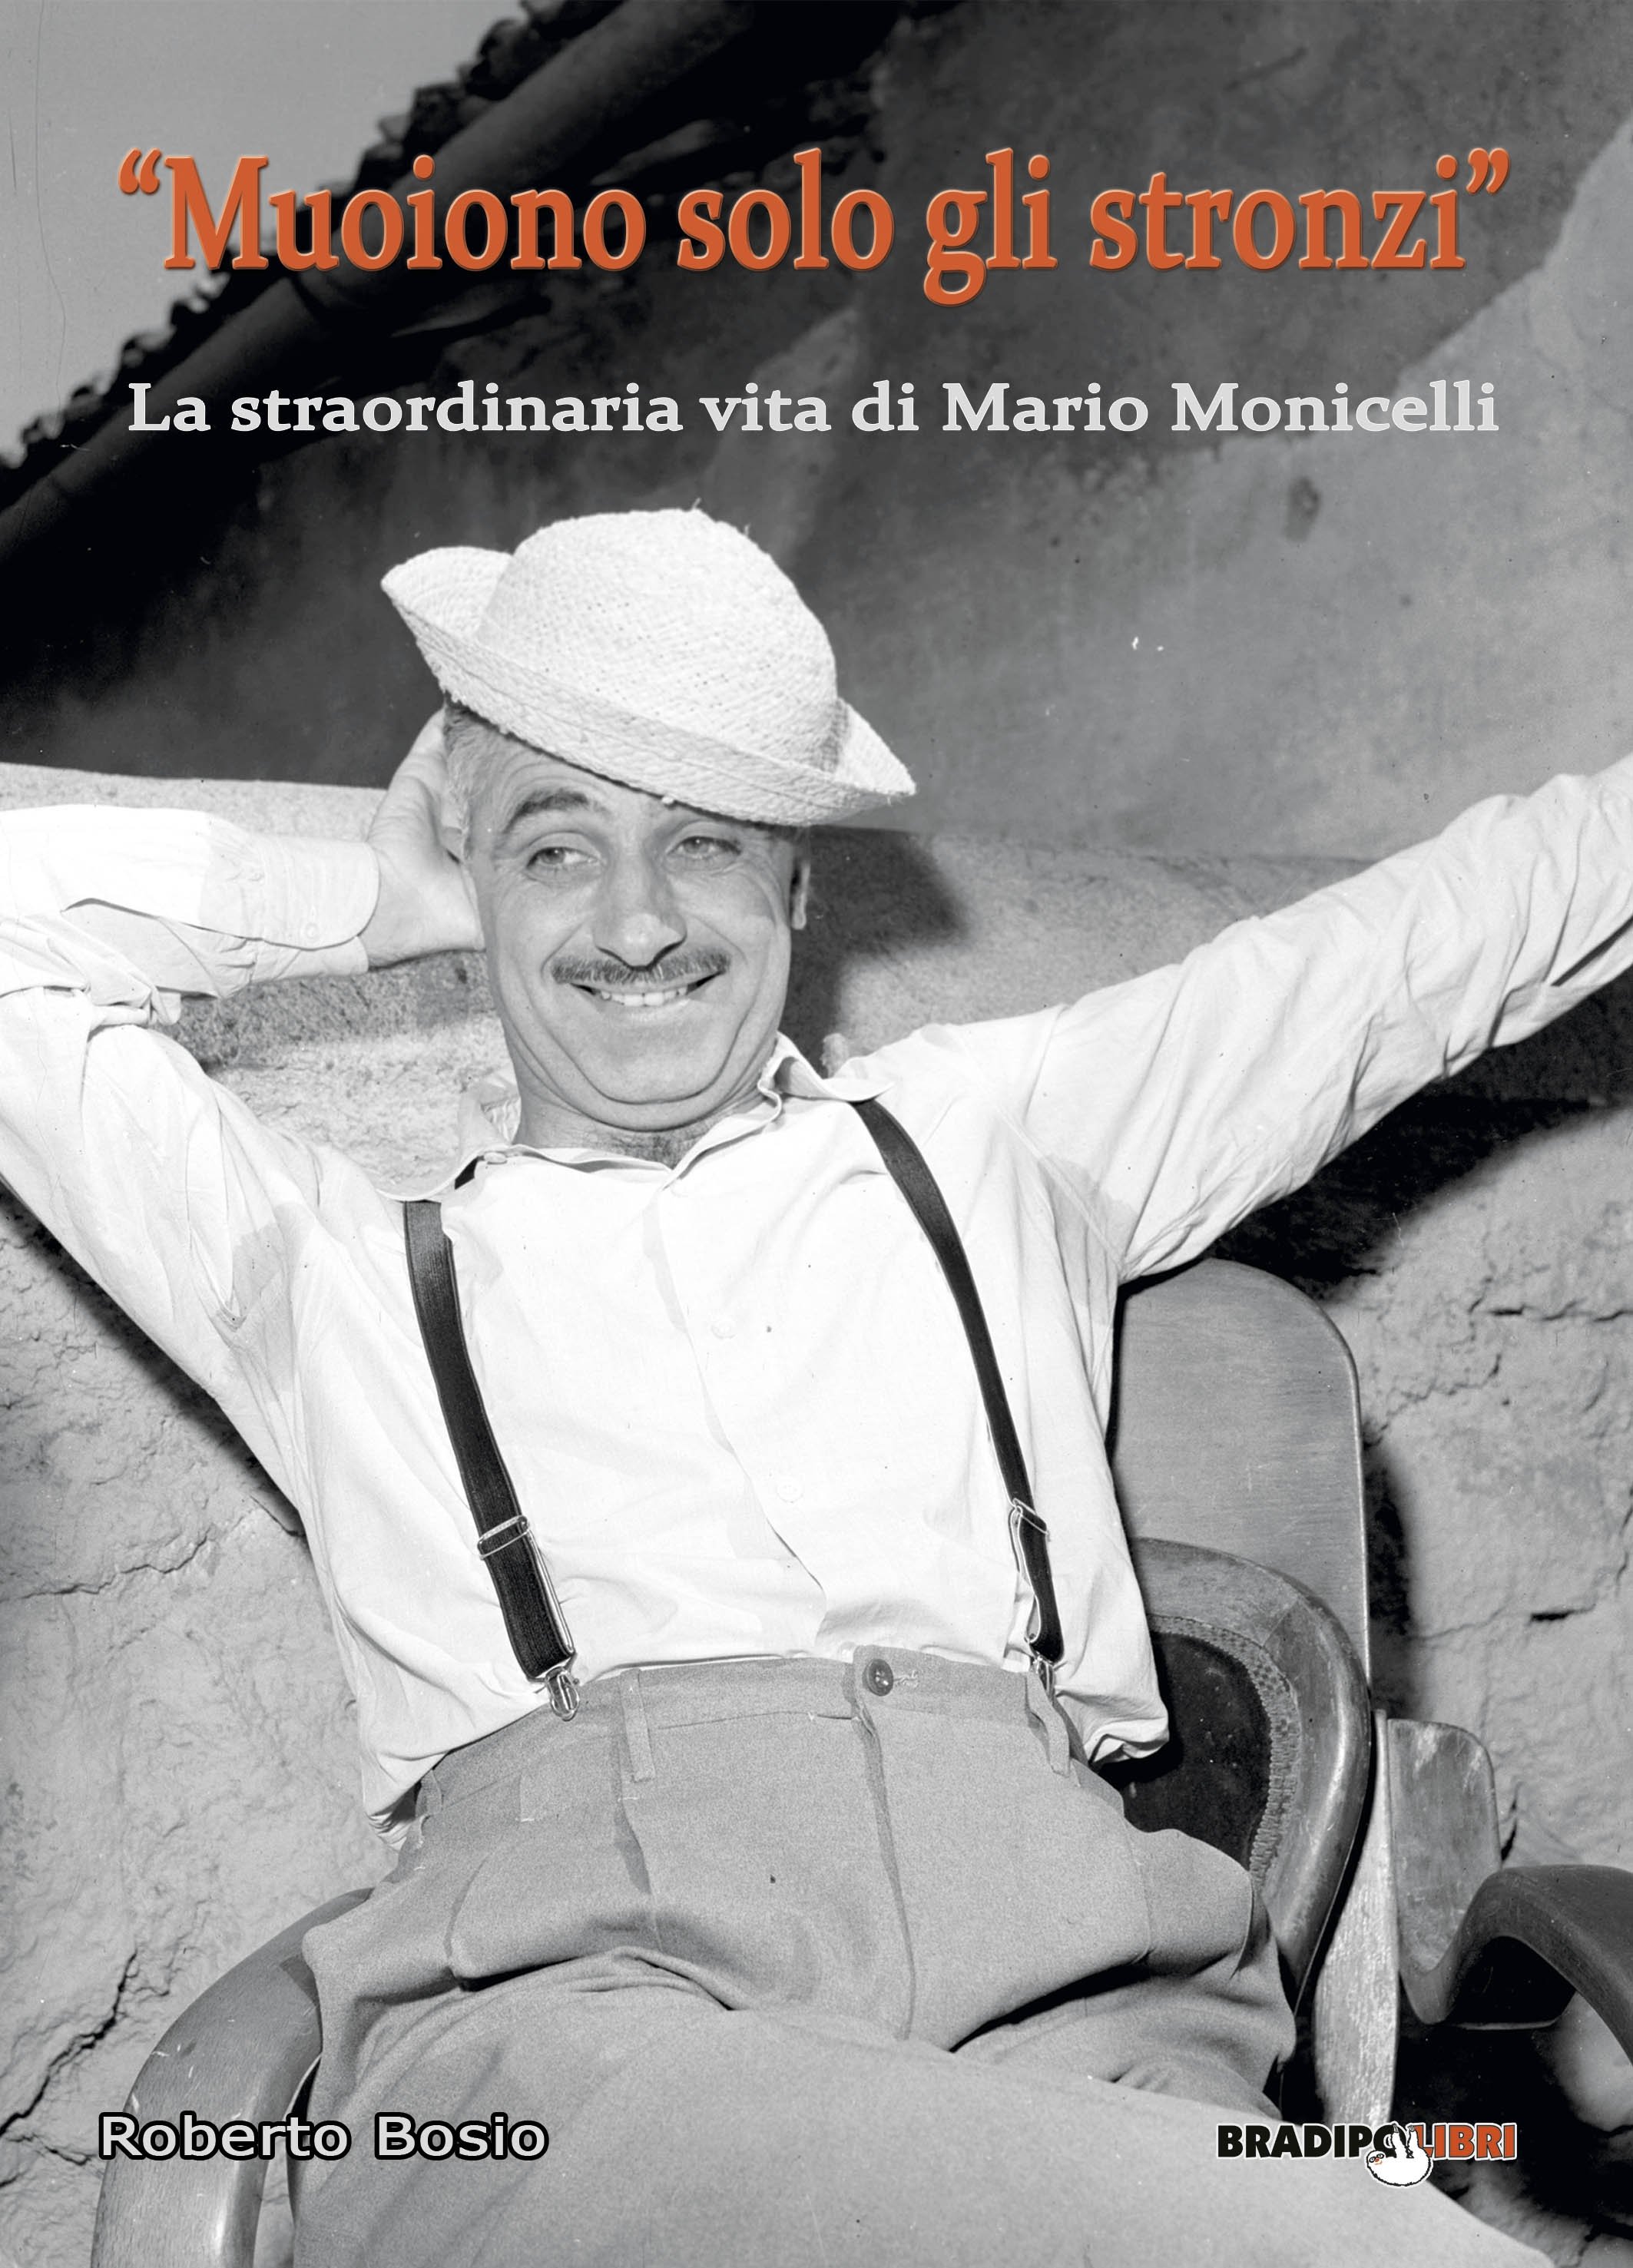 L’omaggio dello scrittore Roberto Bosio a Mario Monicelli